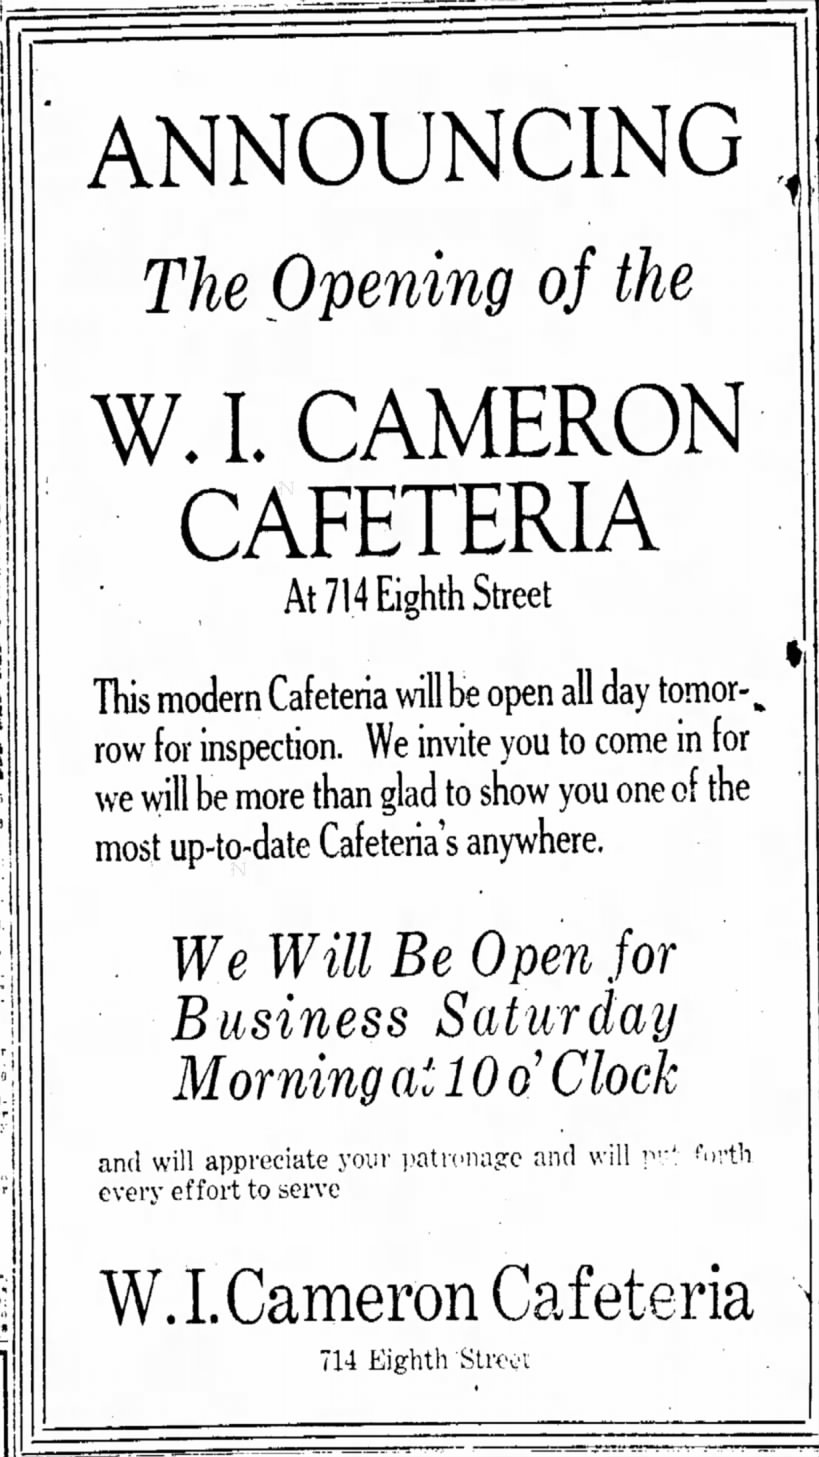 W.I. Cameron Cafeteria November 9, 1922